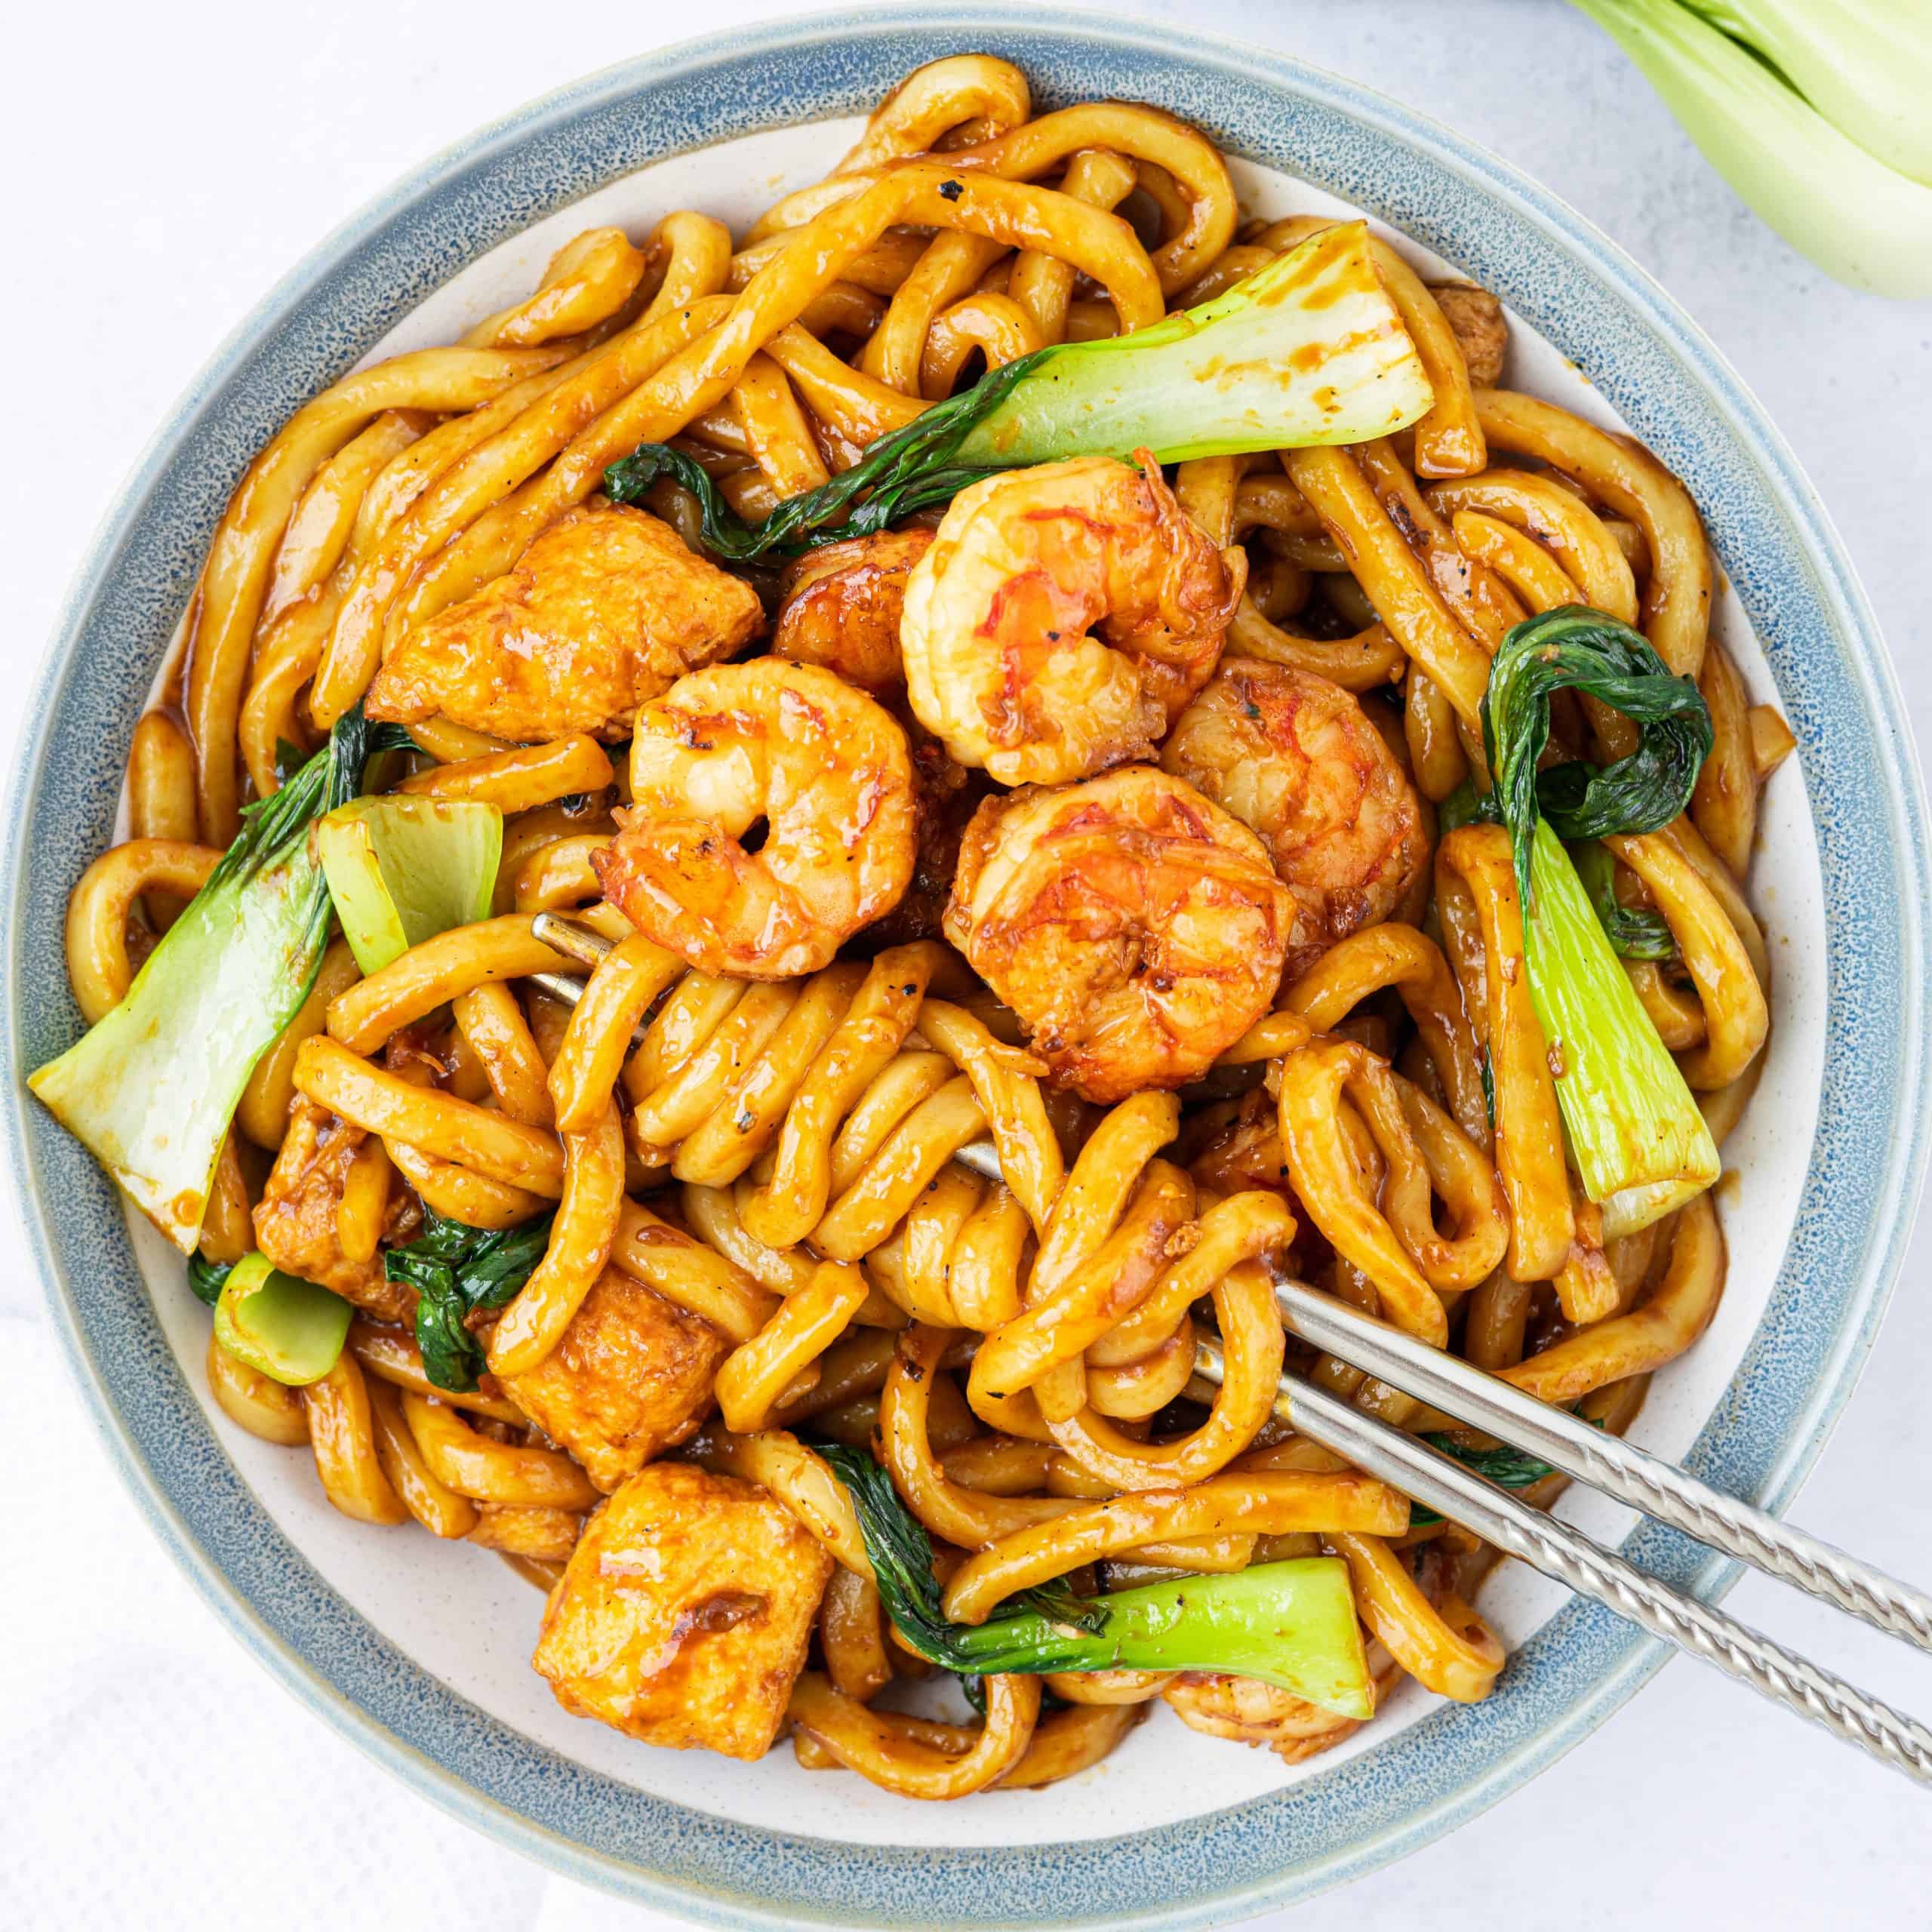 Chinese Style Garlic Shrimp & Veggies Pasta Recipe